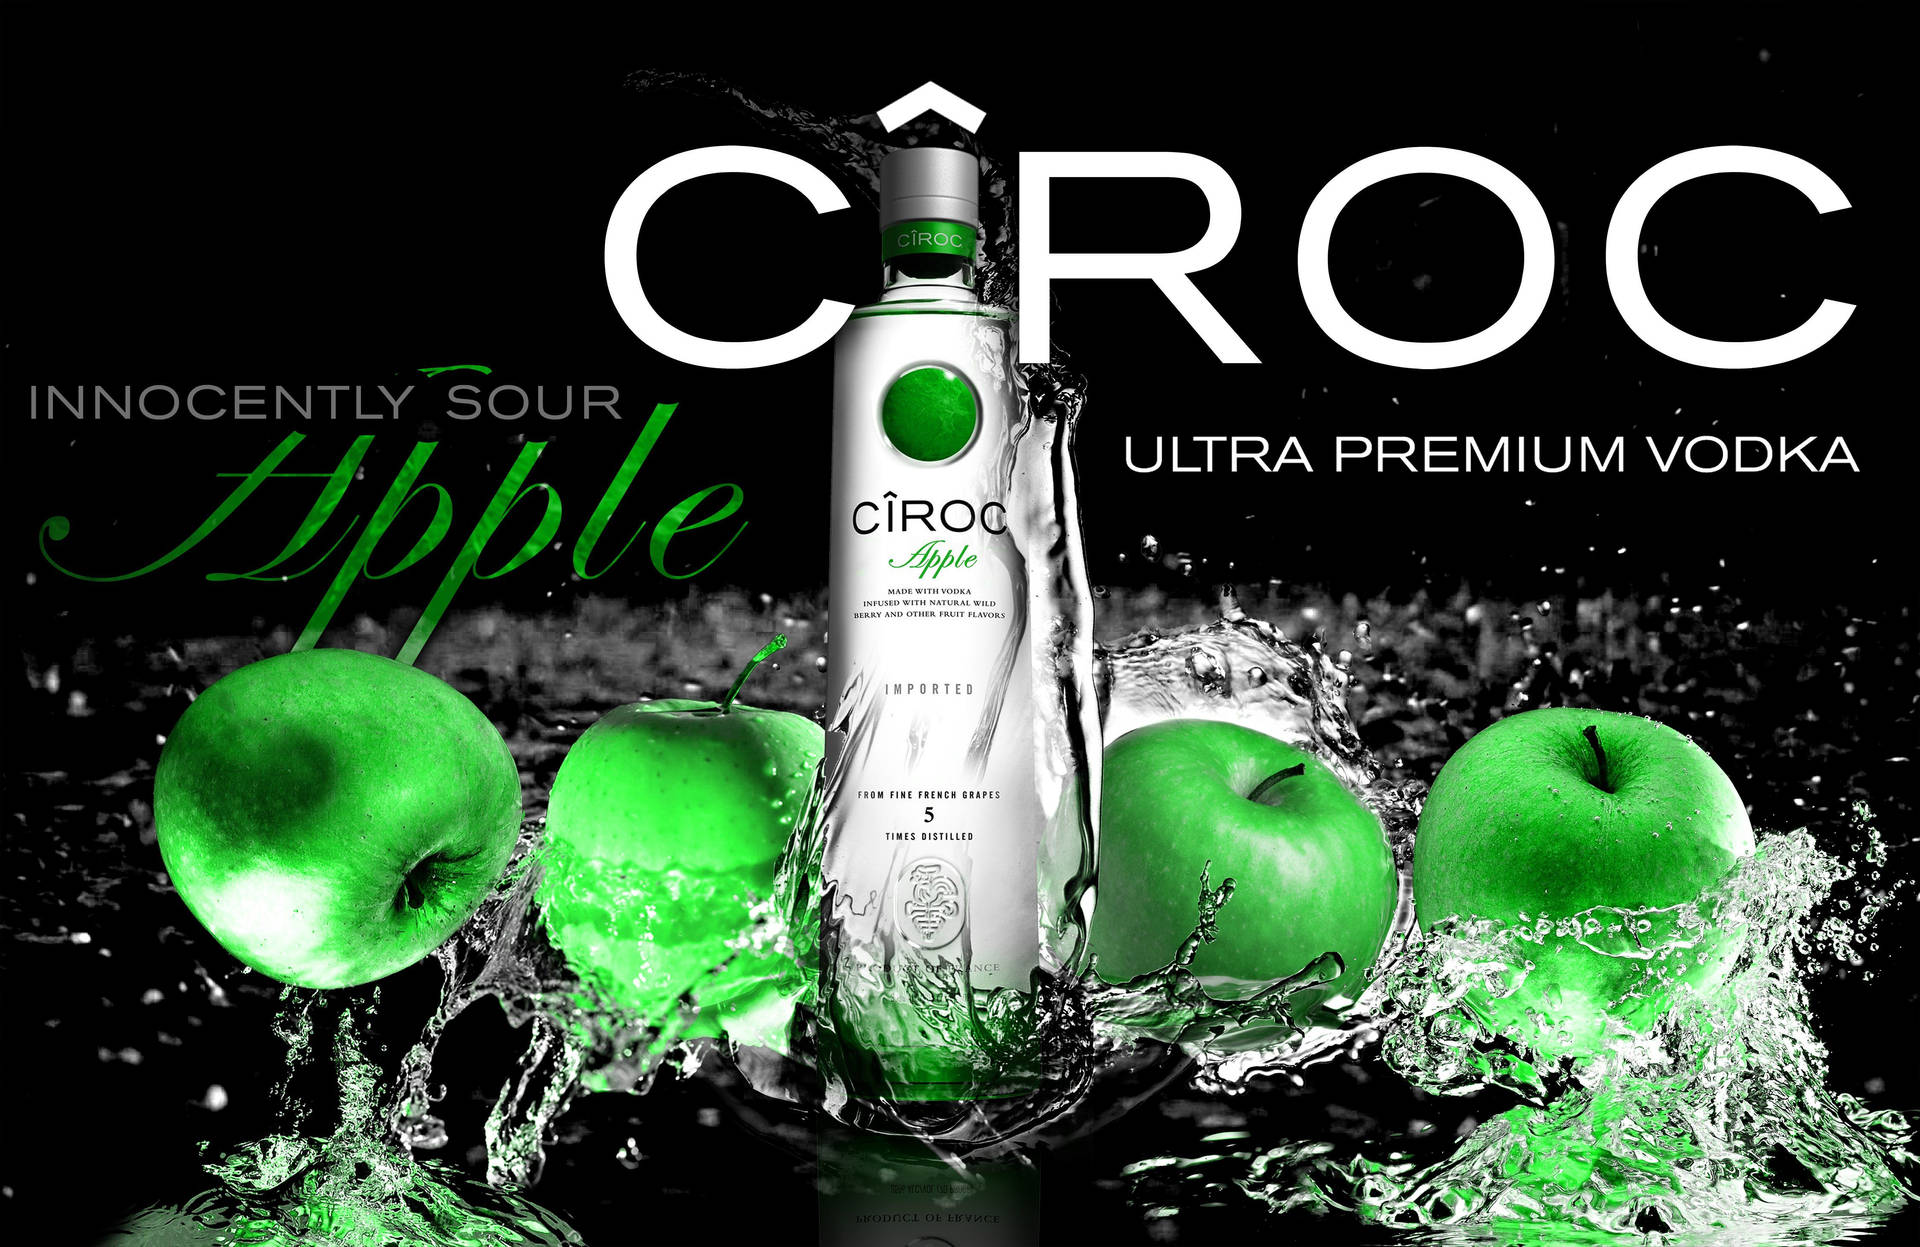 Cirocultra Premium Französischer Vodka Mit Apfelgeschmack Wallpaper